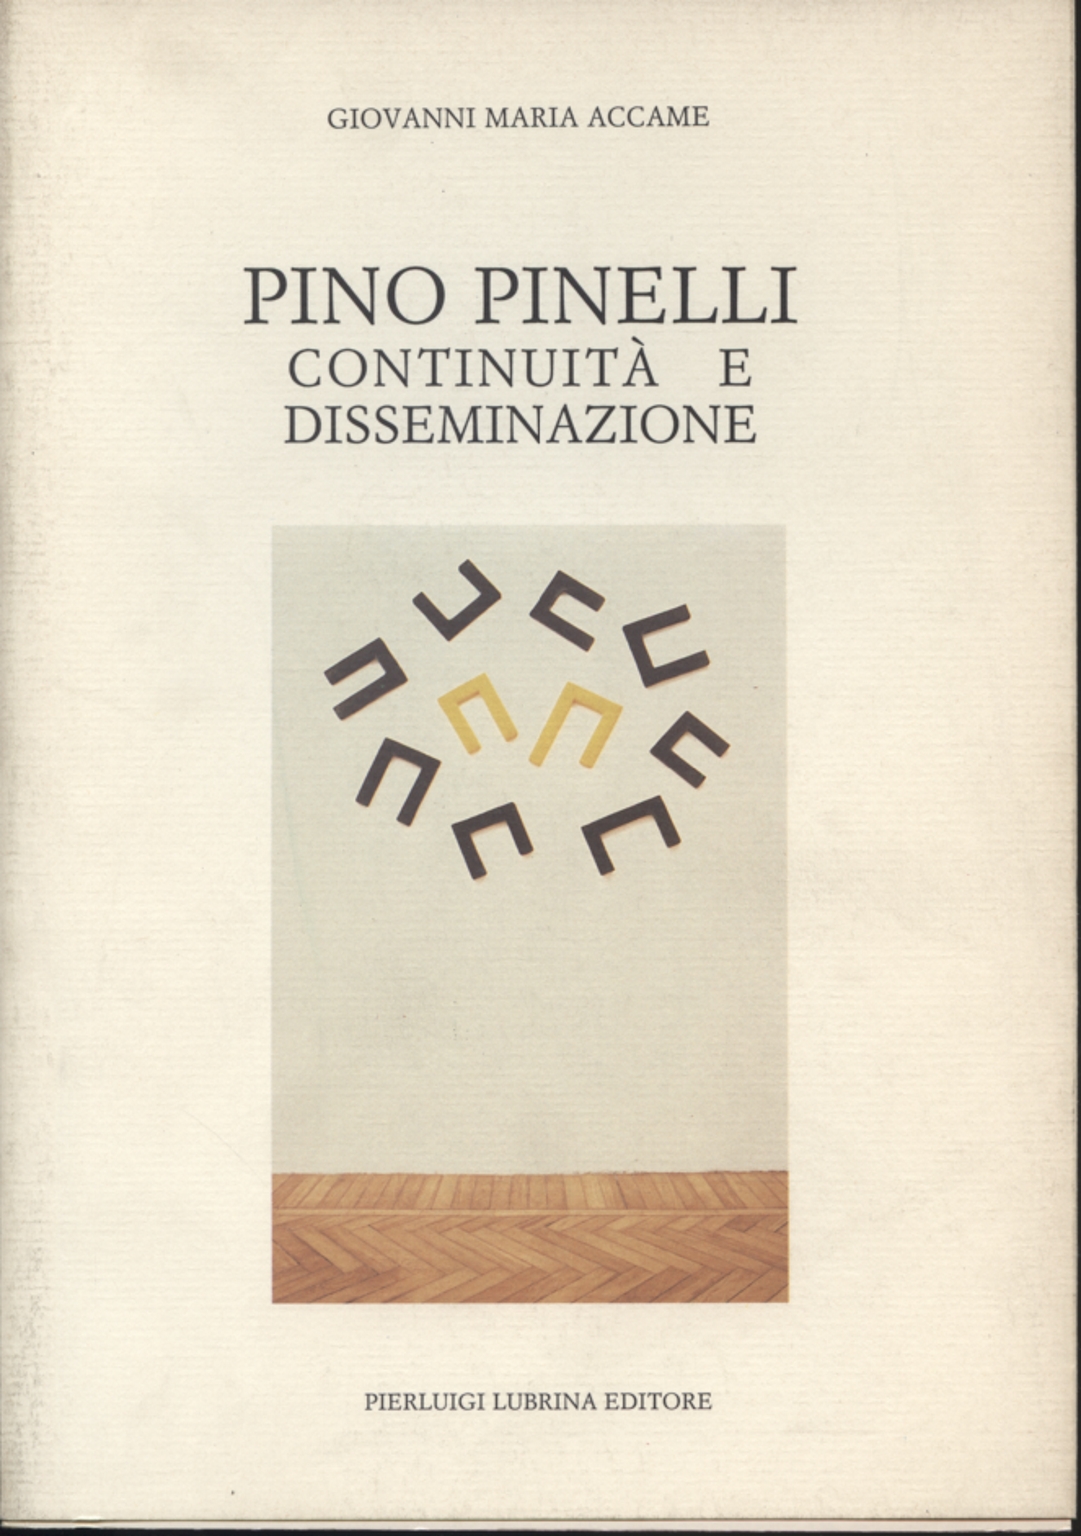 Pino Pinelli: kontinuität und verbreitung, Giovanni Maria Accame